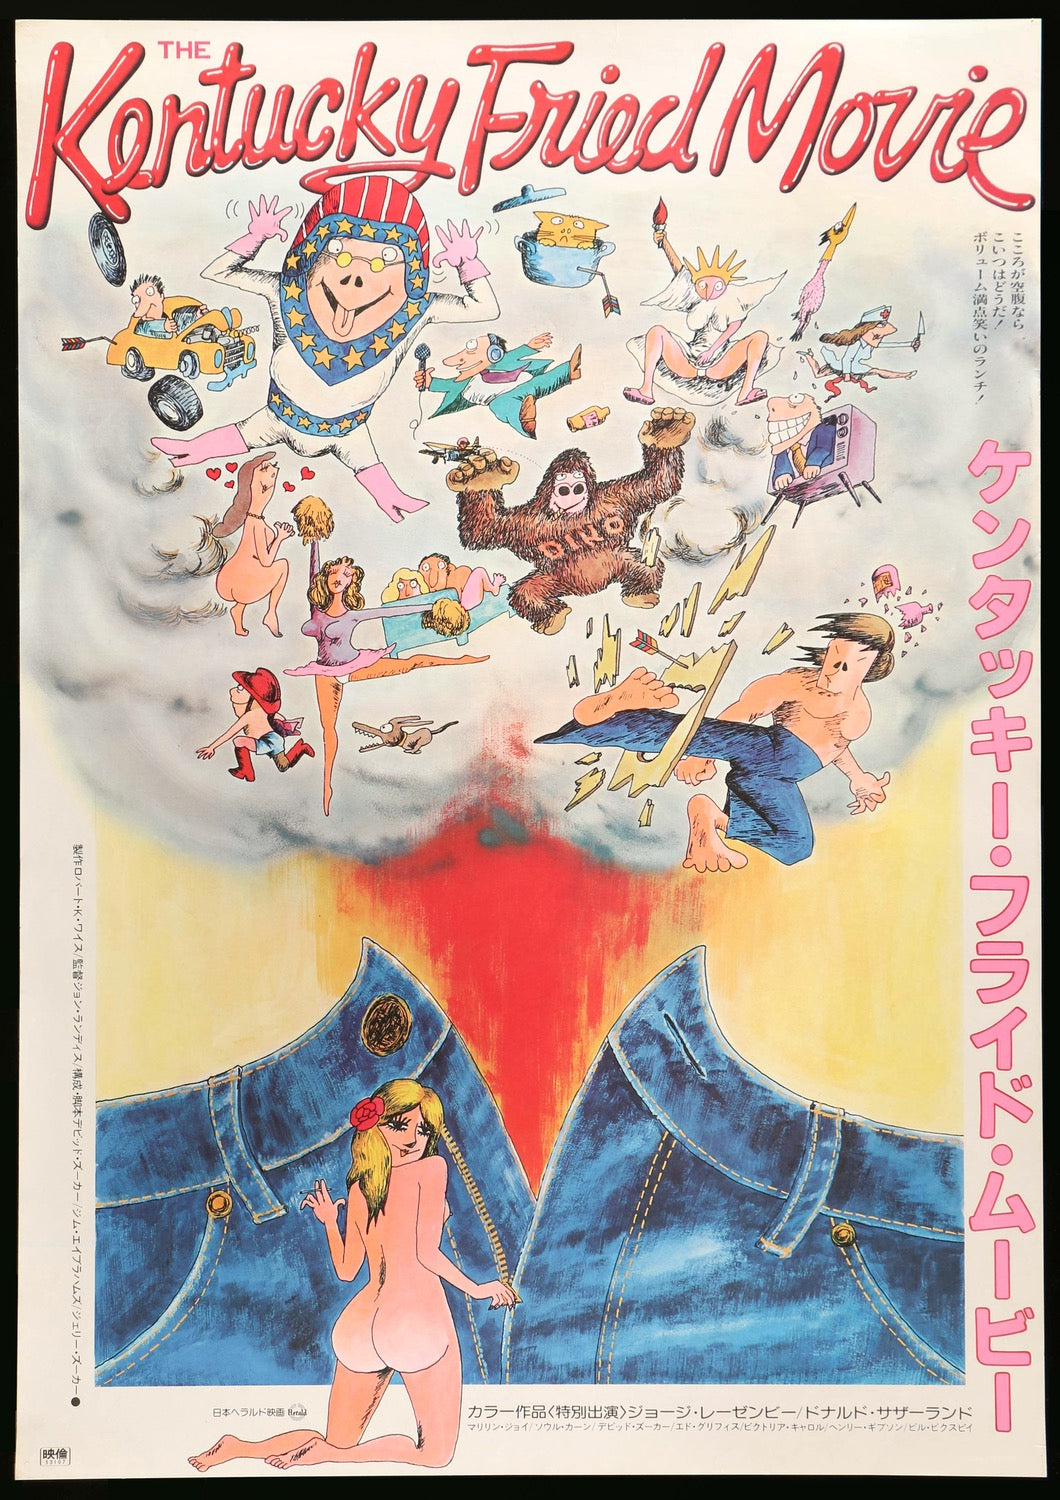 Kentucky Fried Movie (1977) original movie poster for sale at Original Film Art